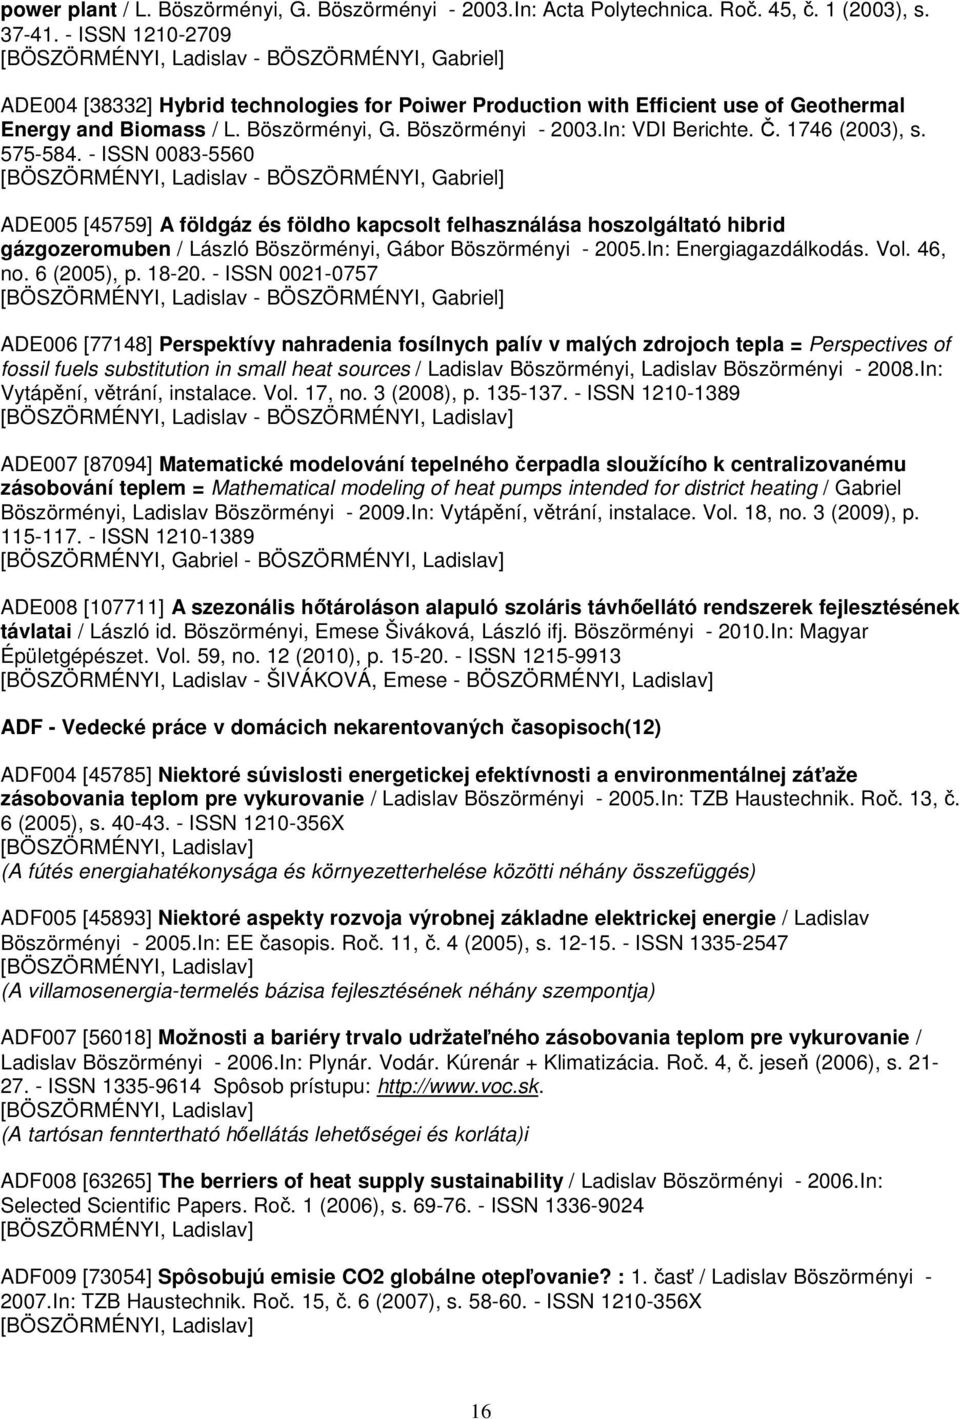 Böszörményi - 2003.In: VDI Berichte. Č. 1746 (2003), s. 575-584.